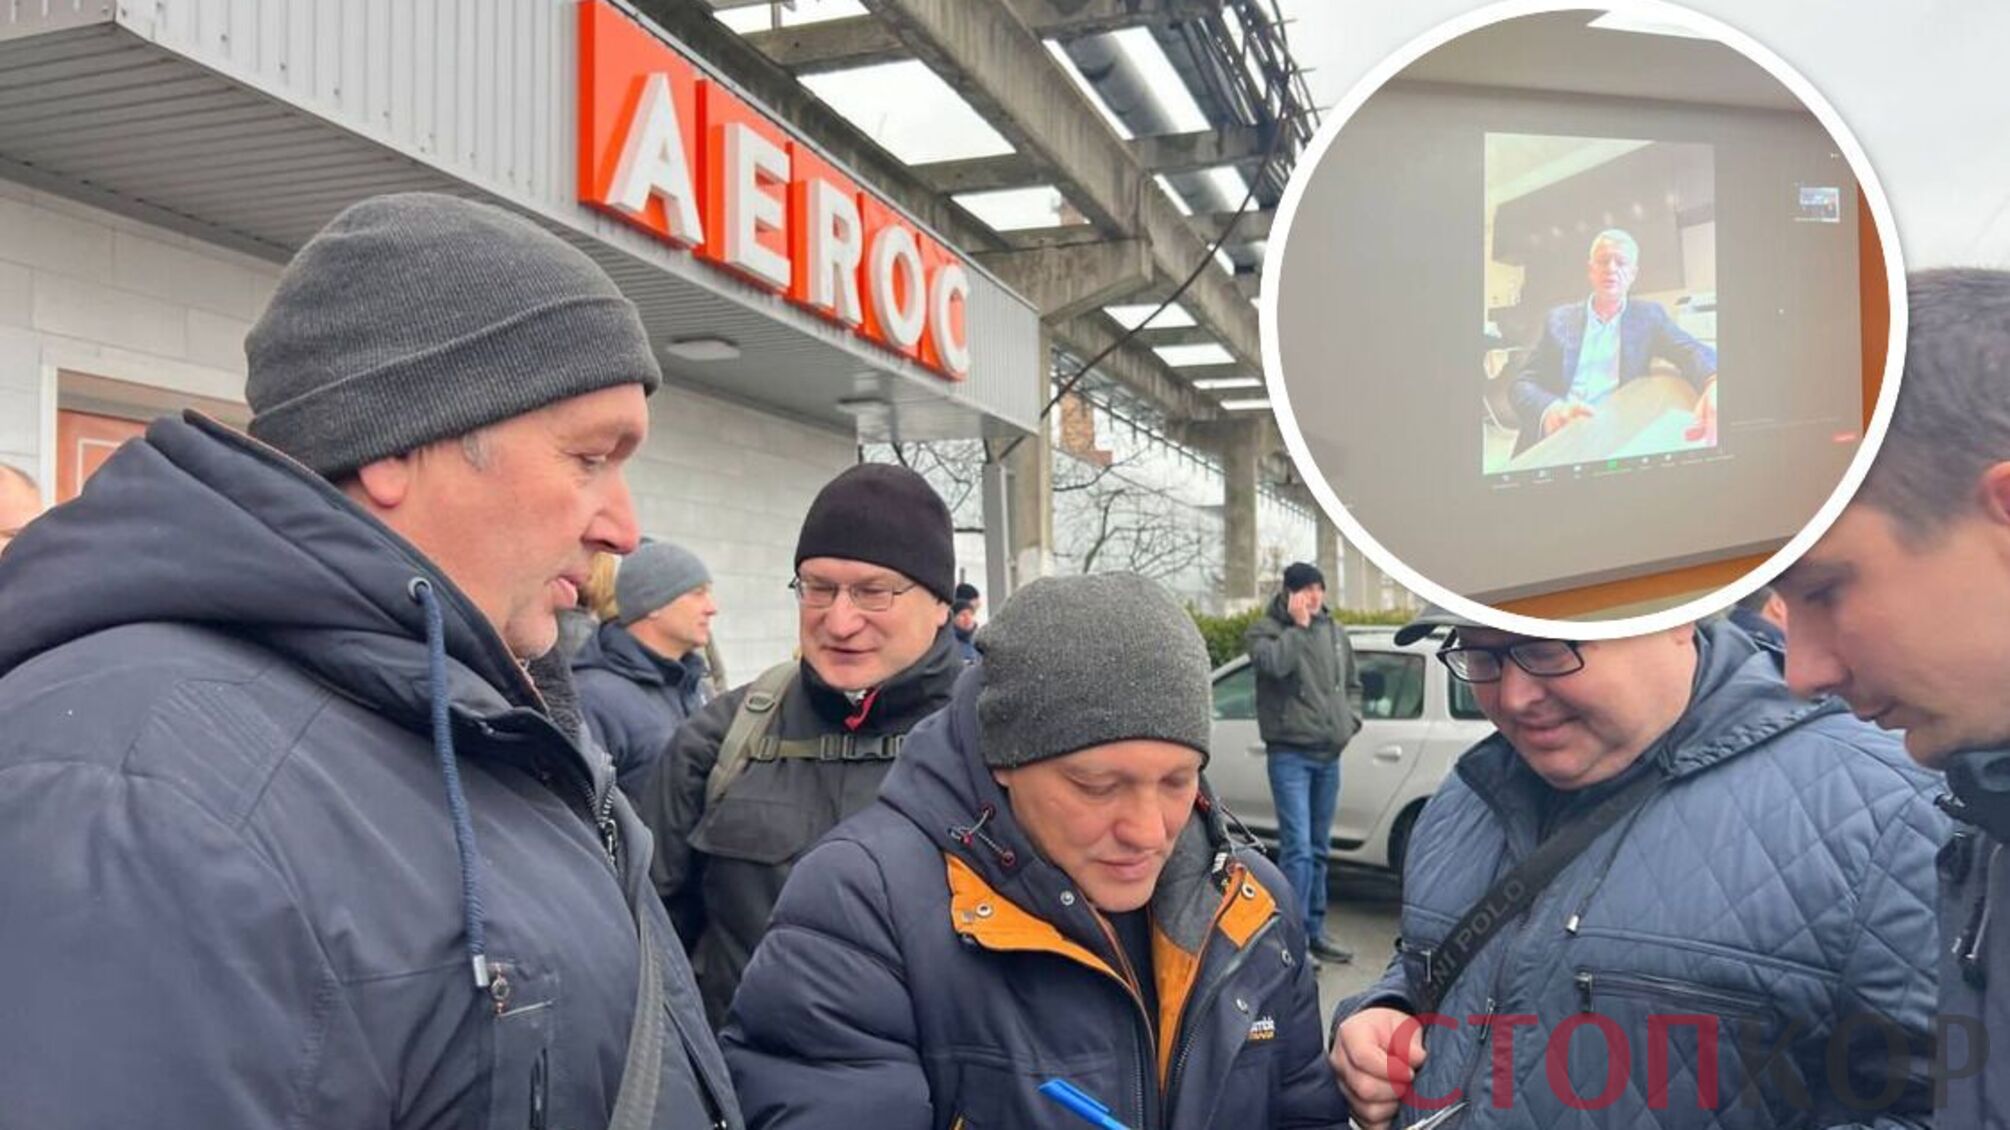 Адміністрація 'Аерок' російського олігарха Молчанова торгує арештованою продукцією і звільняє працівників - деталі